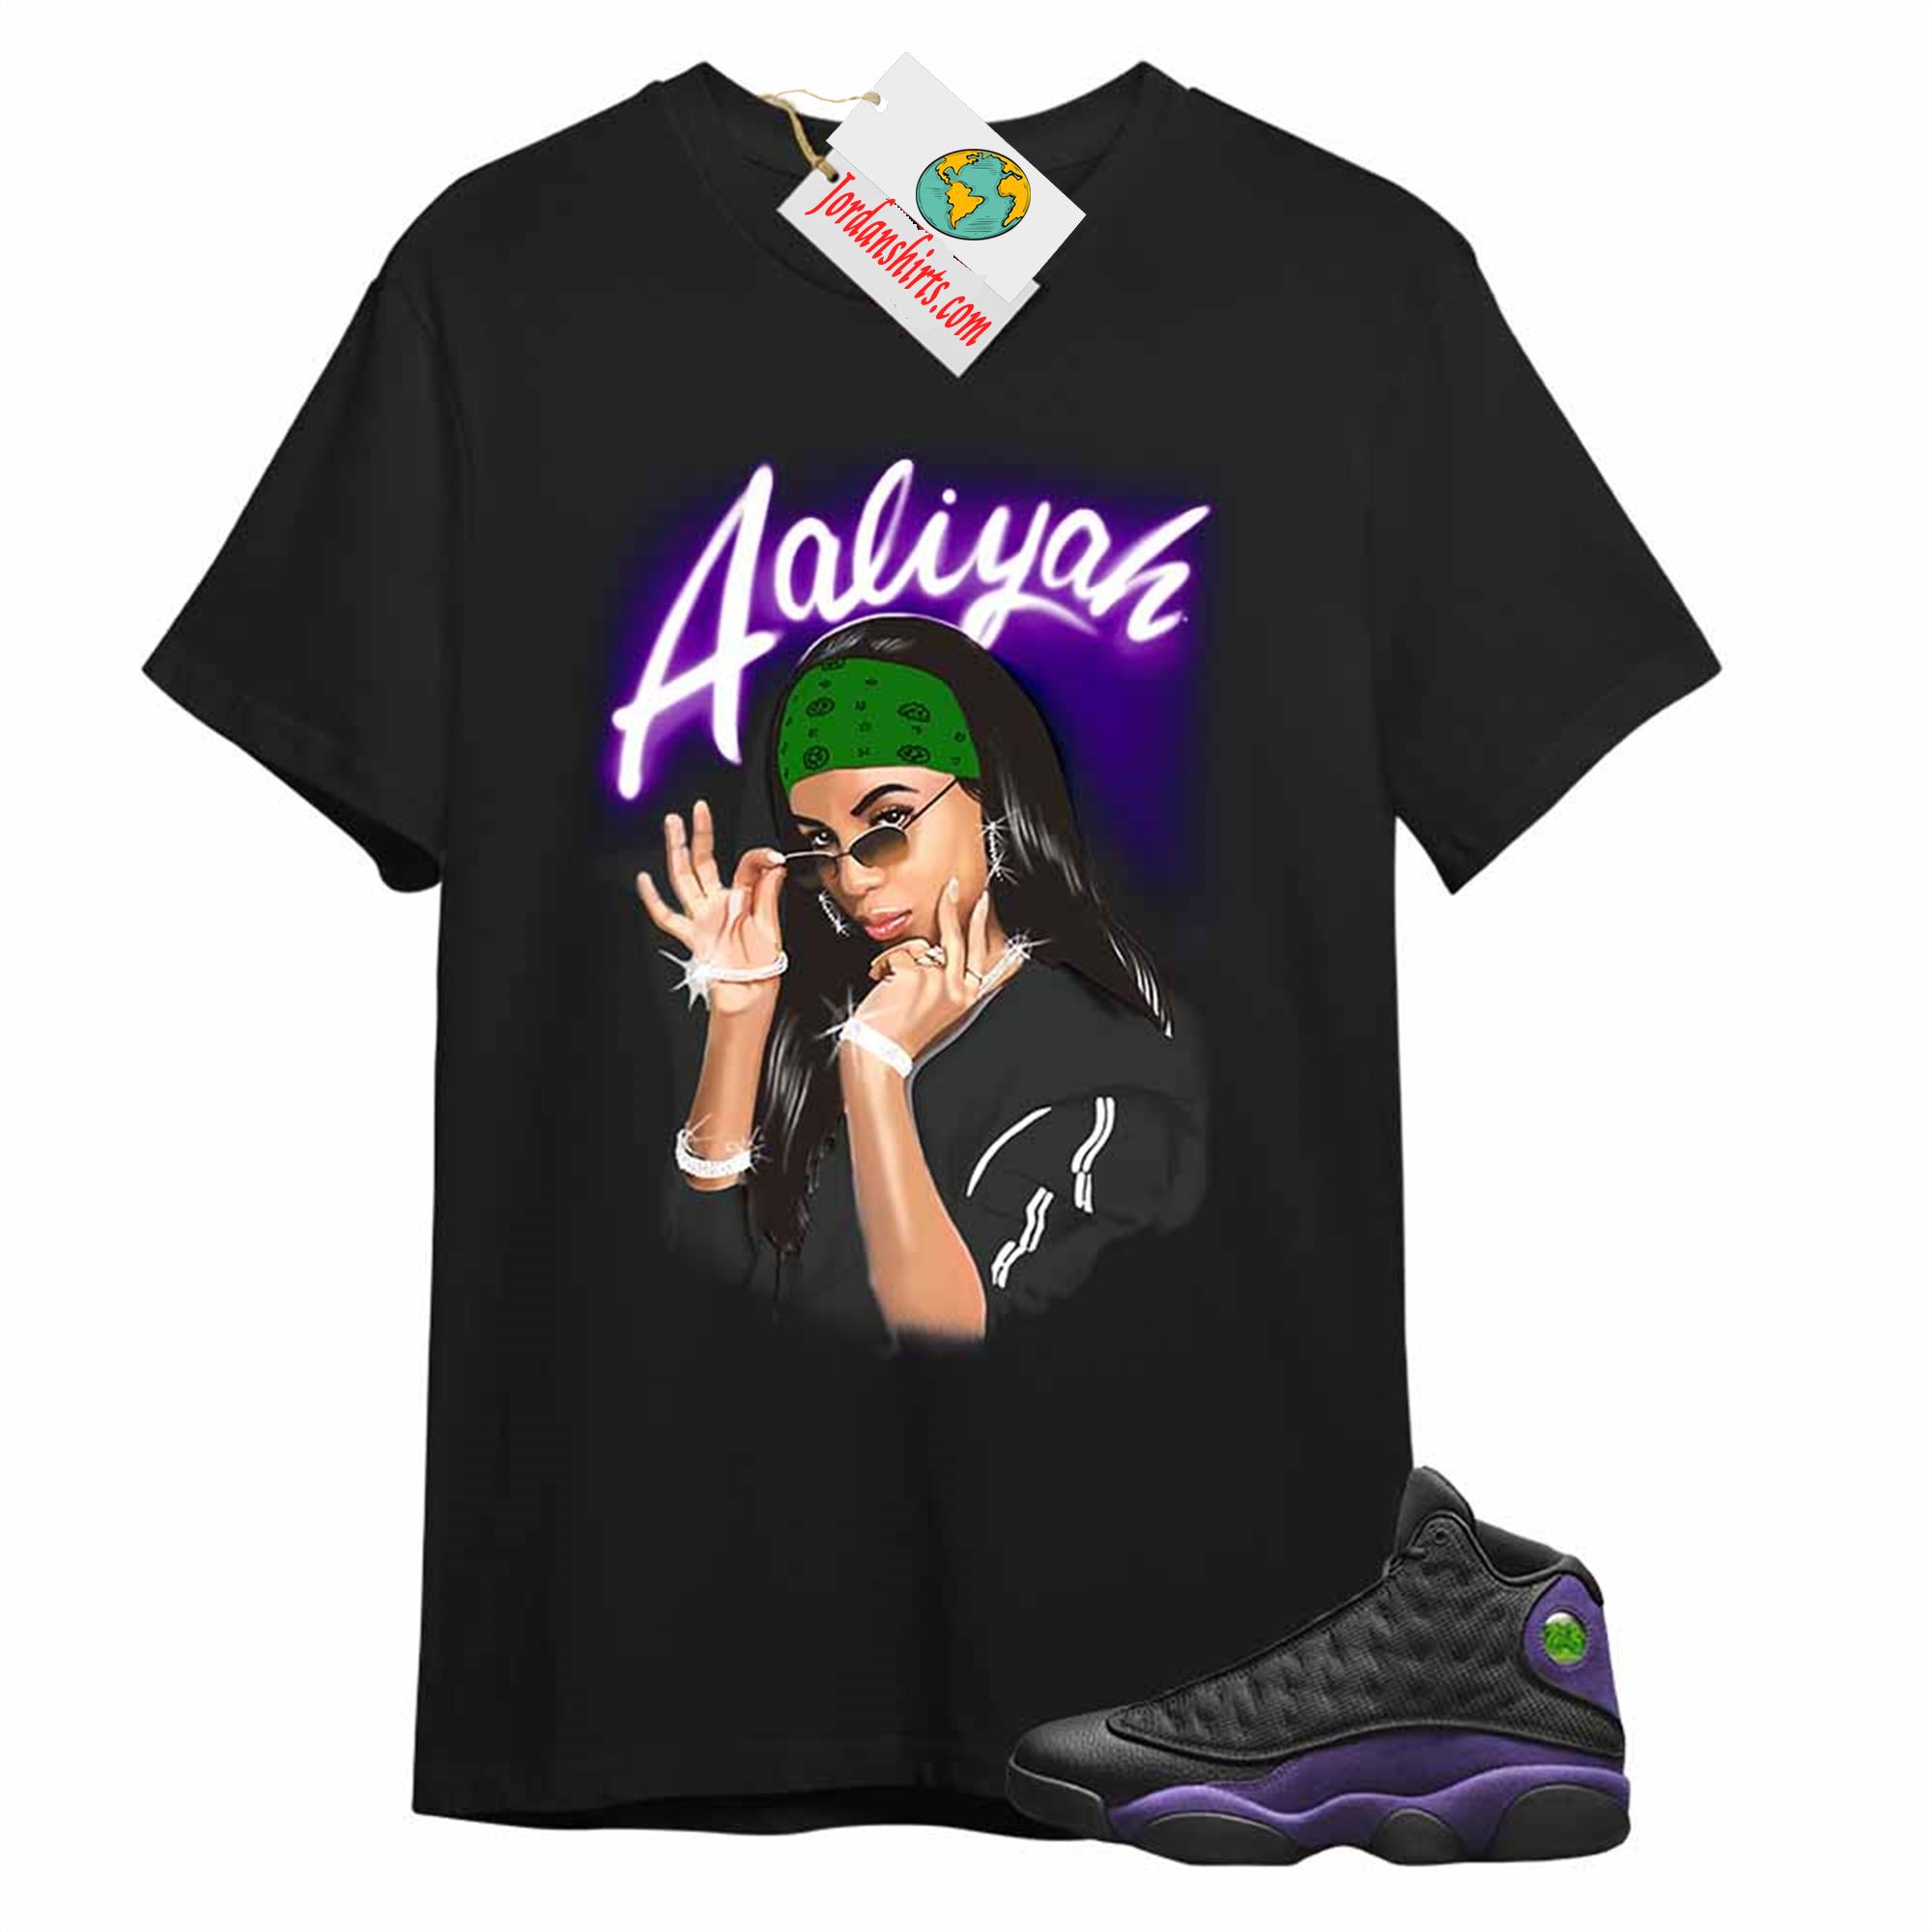 Jordan 13 Shirt, Aaliyah Airbrush Black T-shirt Air Jordan 13 Court Purple 13s Size Up To 5xl